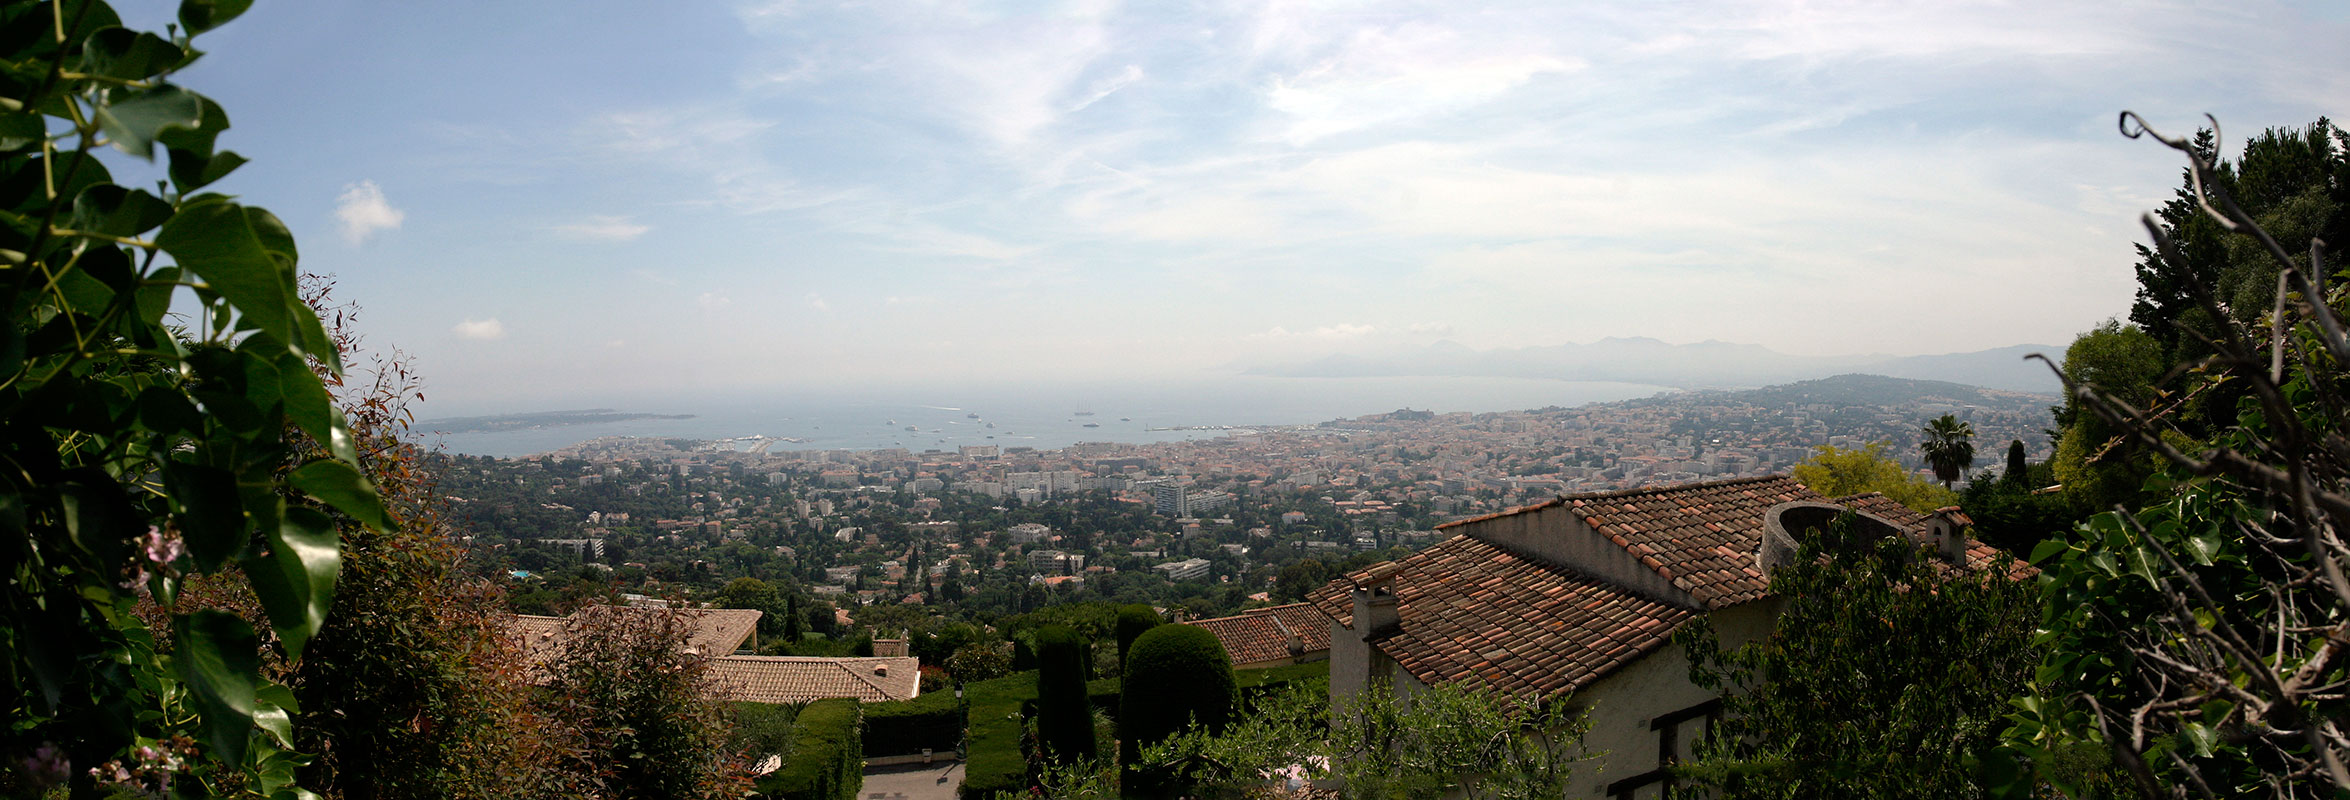 panoramic photo